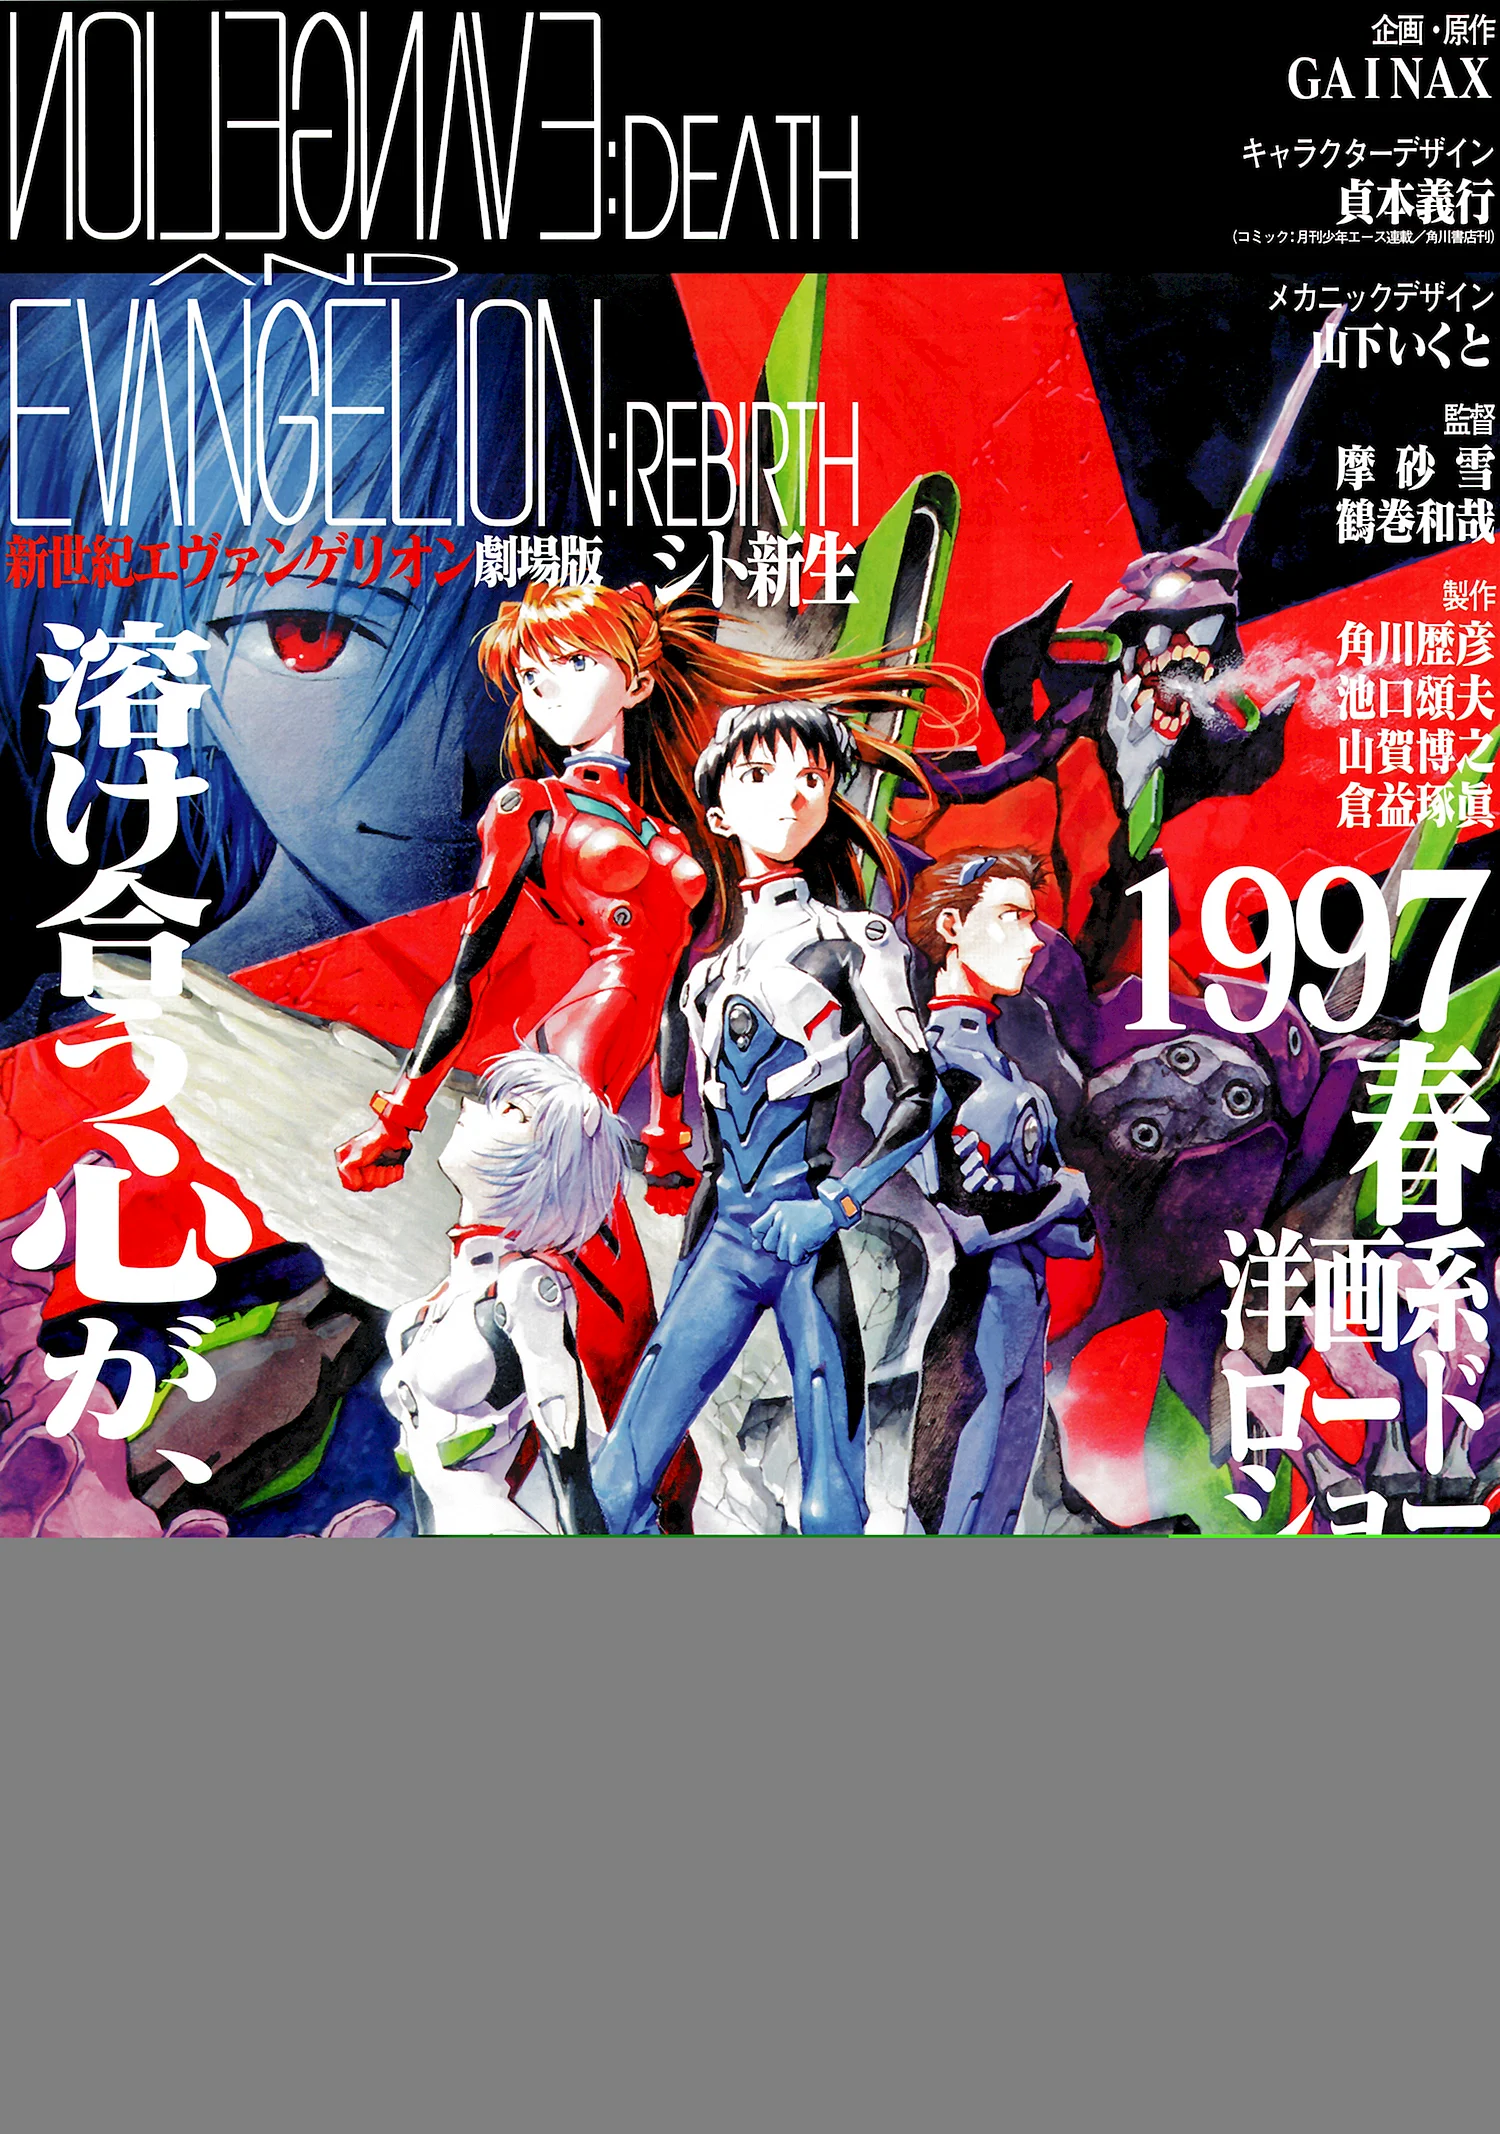 Neon Genesis Evangelion Death & Rebirth Постер